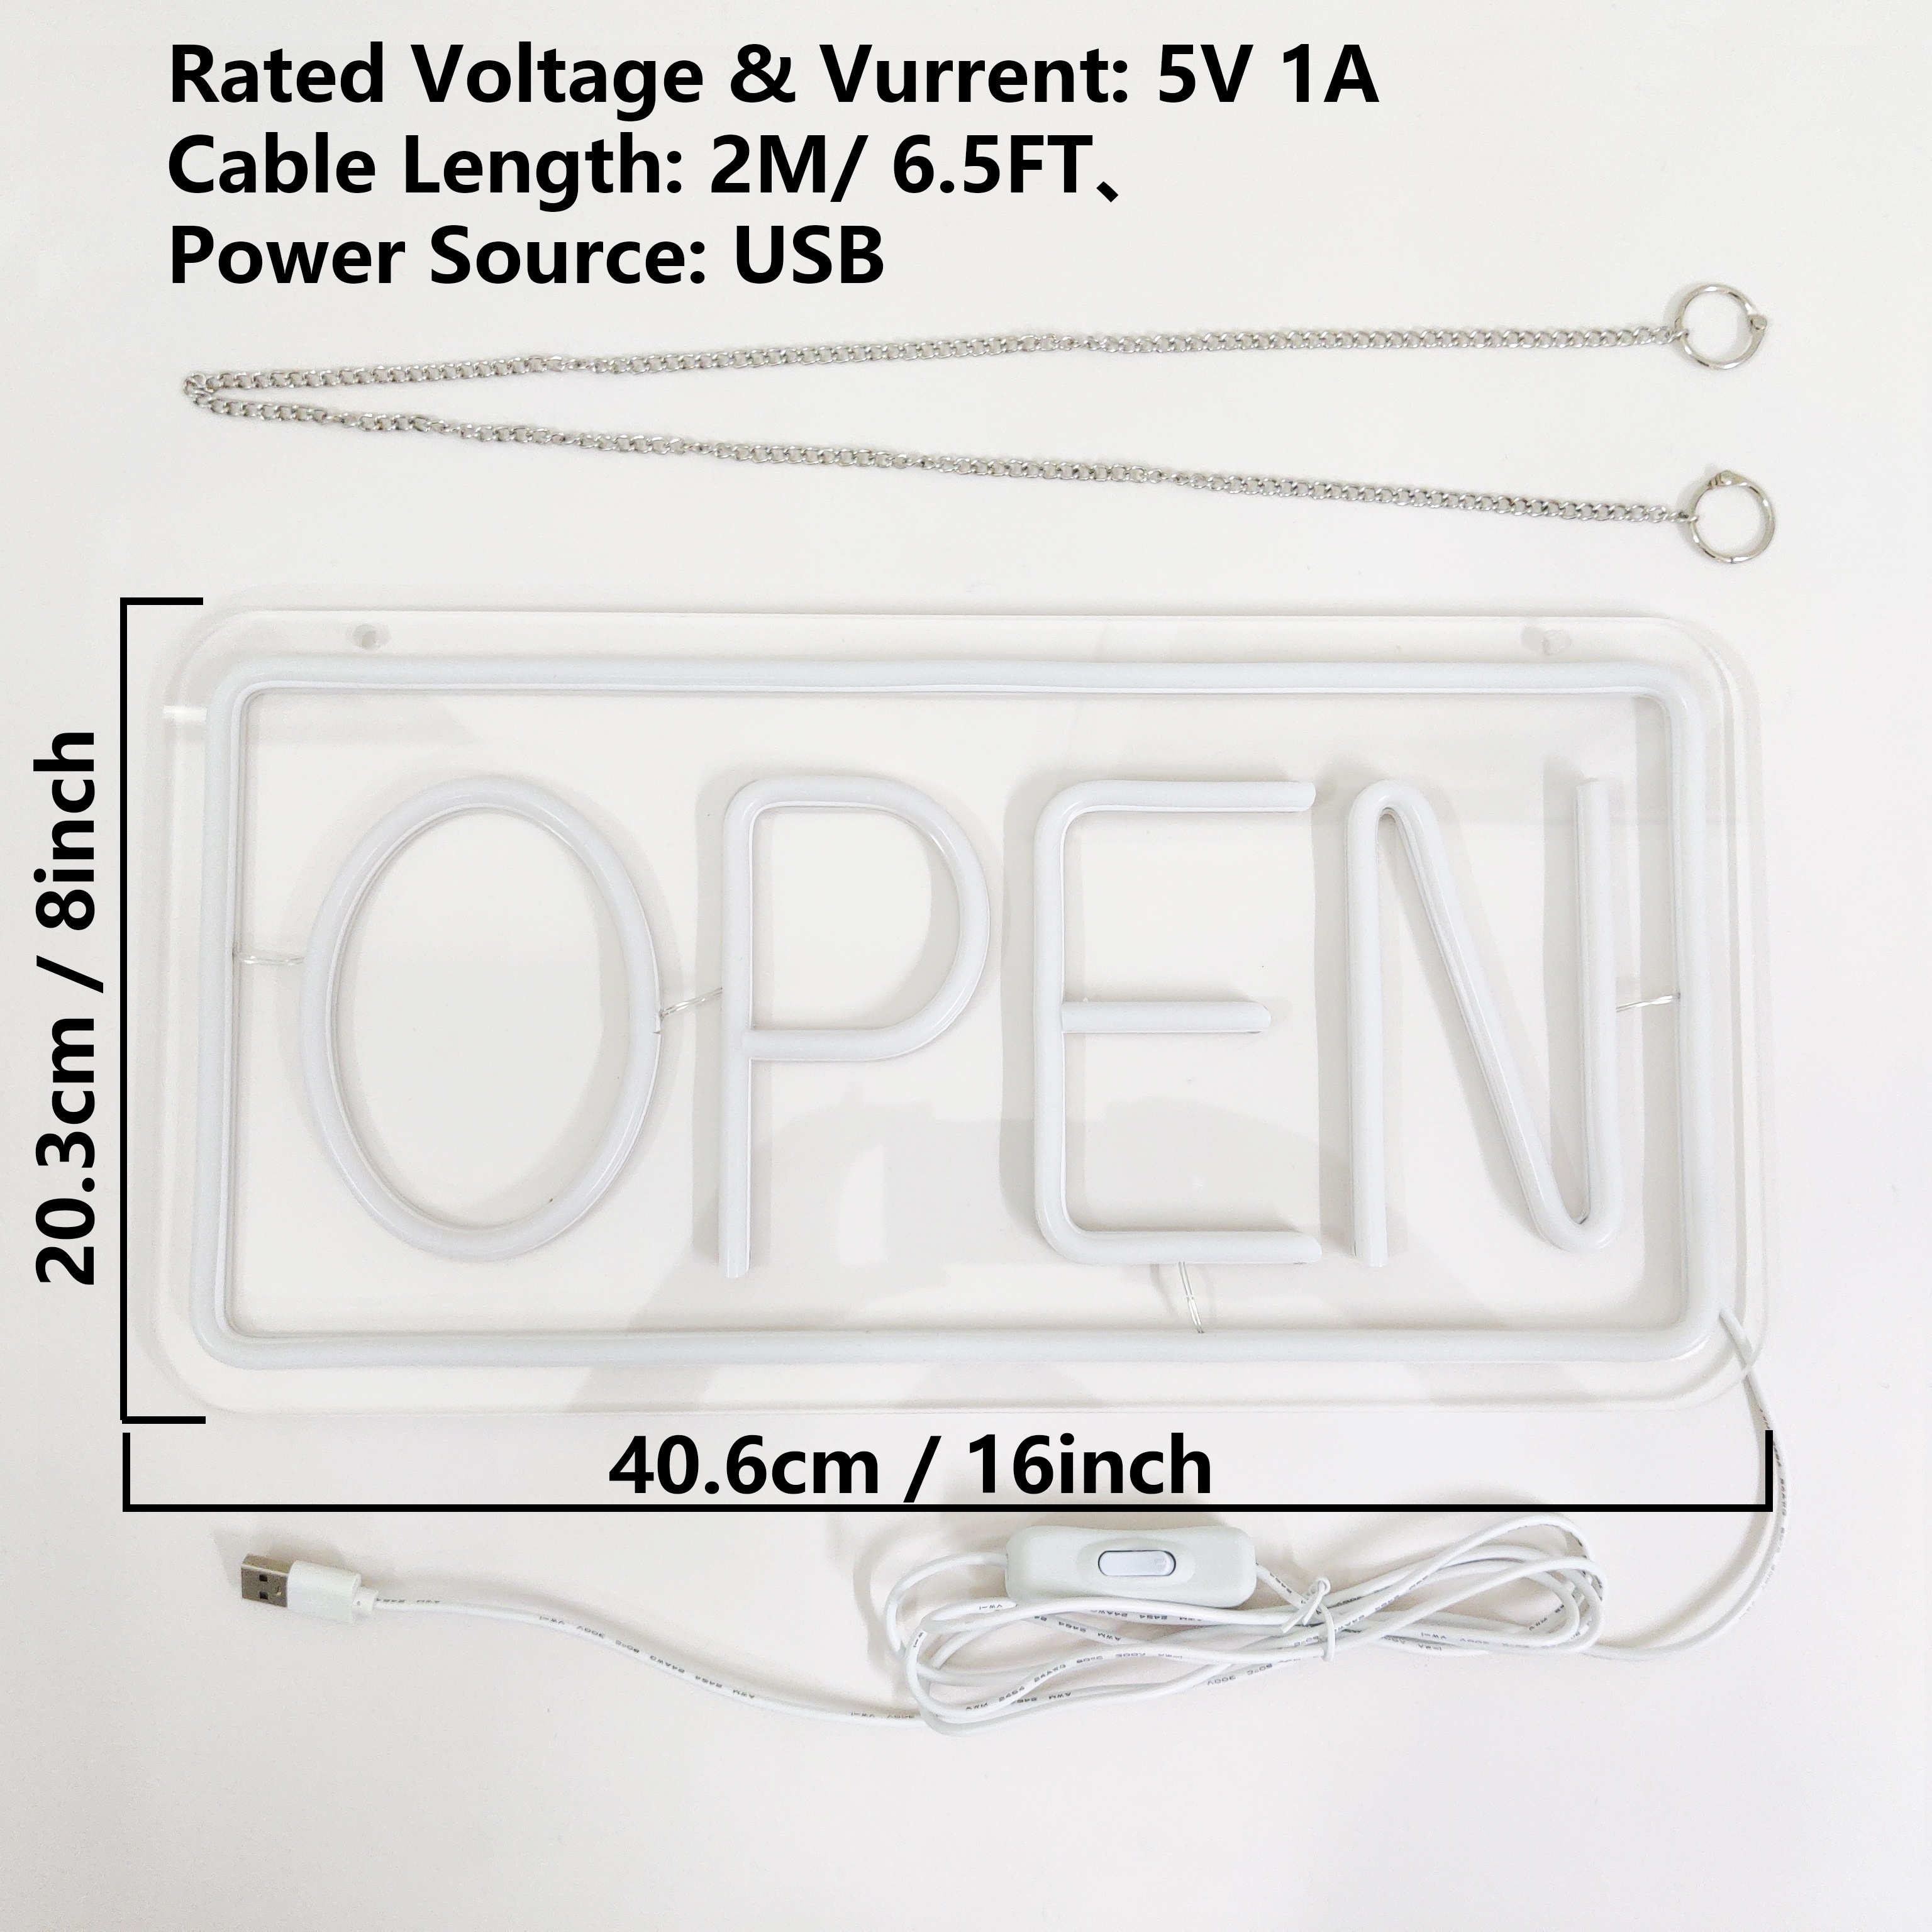 EURO 80500303: LED-Schild OPEN classic bei reichelt elektronik